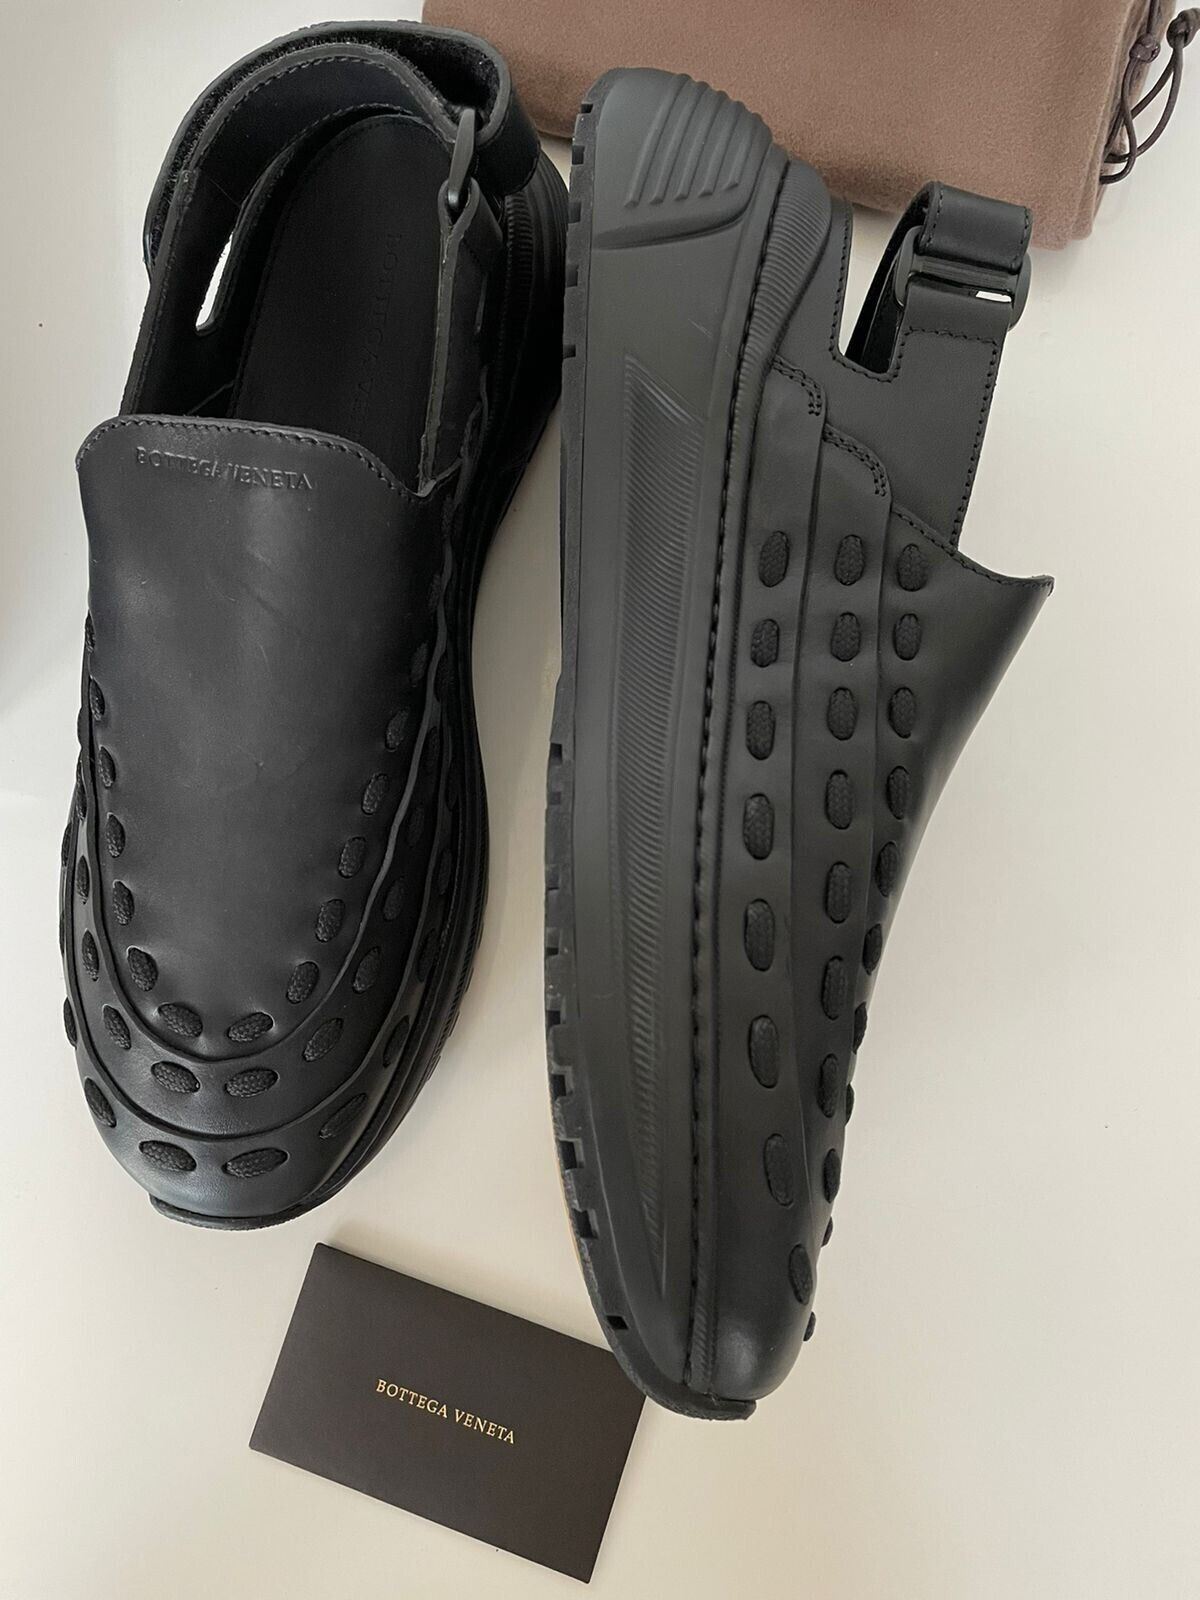 NIB $950 Мужские кожаные черные кроссовки Bottega Veneta Сандалии 12 США (45 ЕС) 578304 